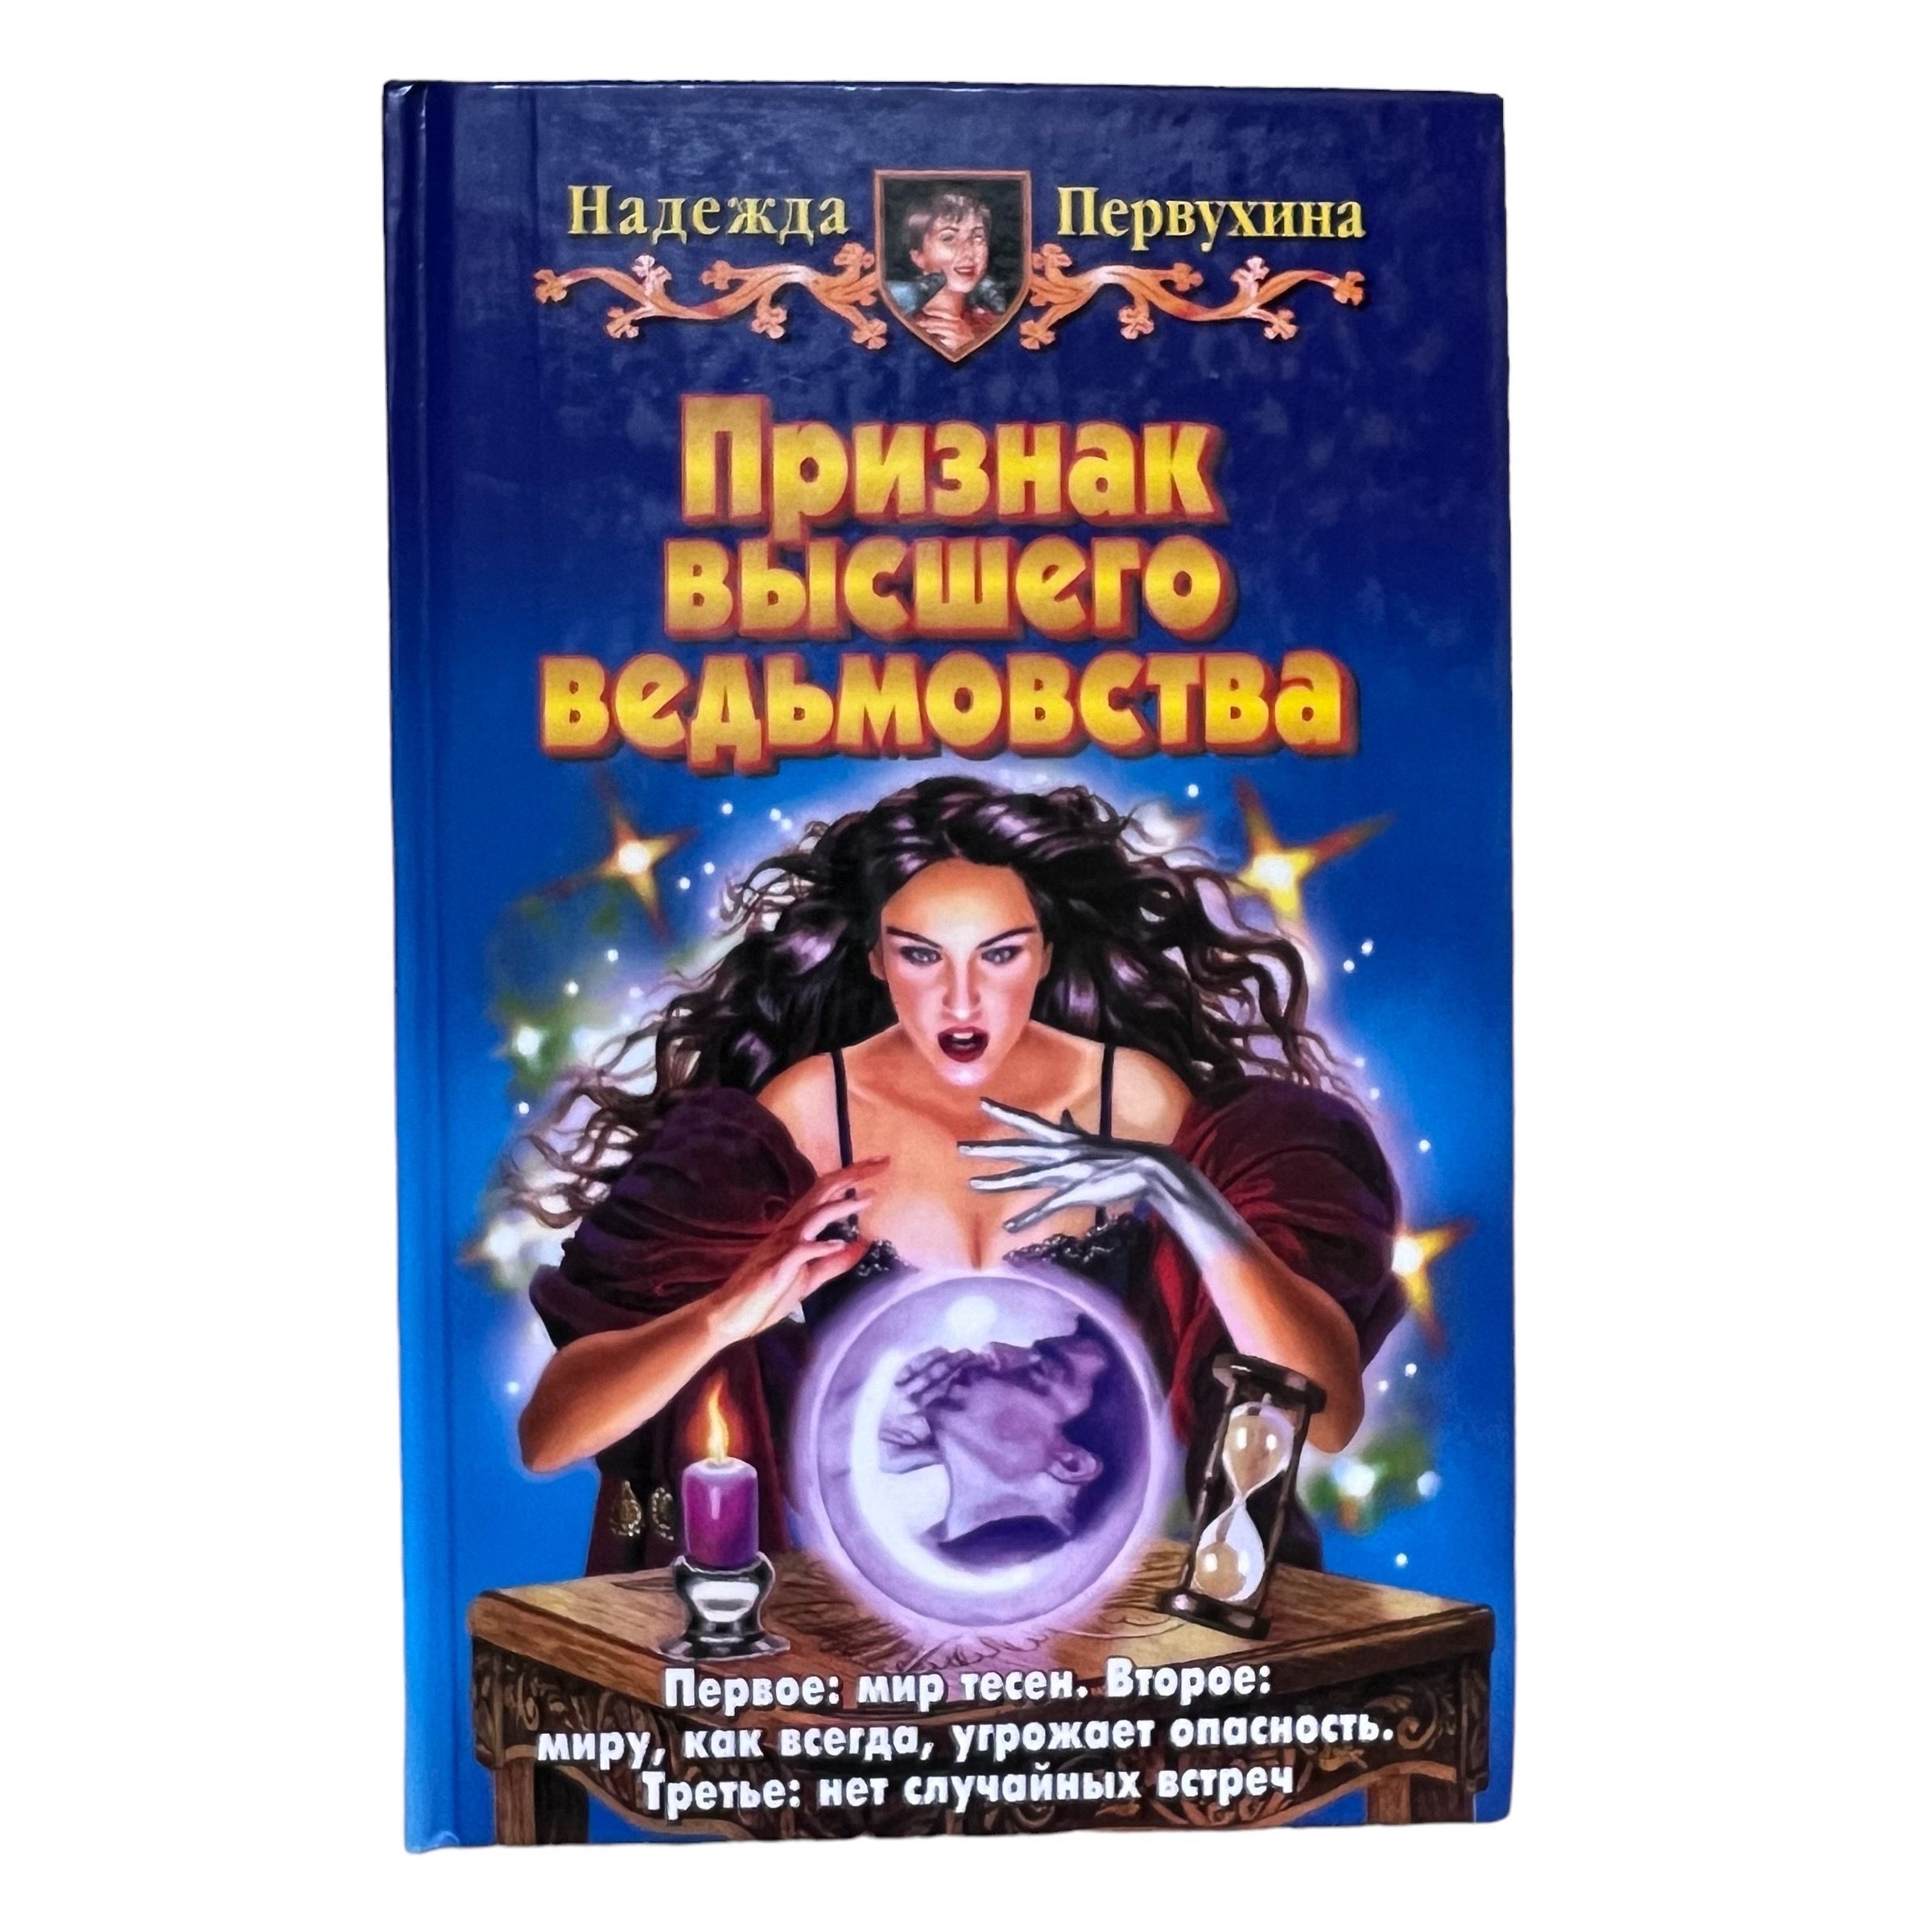 Слушать аудиокнигу ученик книга 9. Купить в Новосибирске книгу Петербург для детей Первухина.